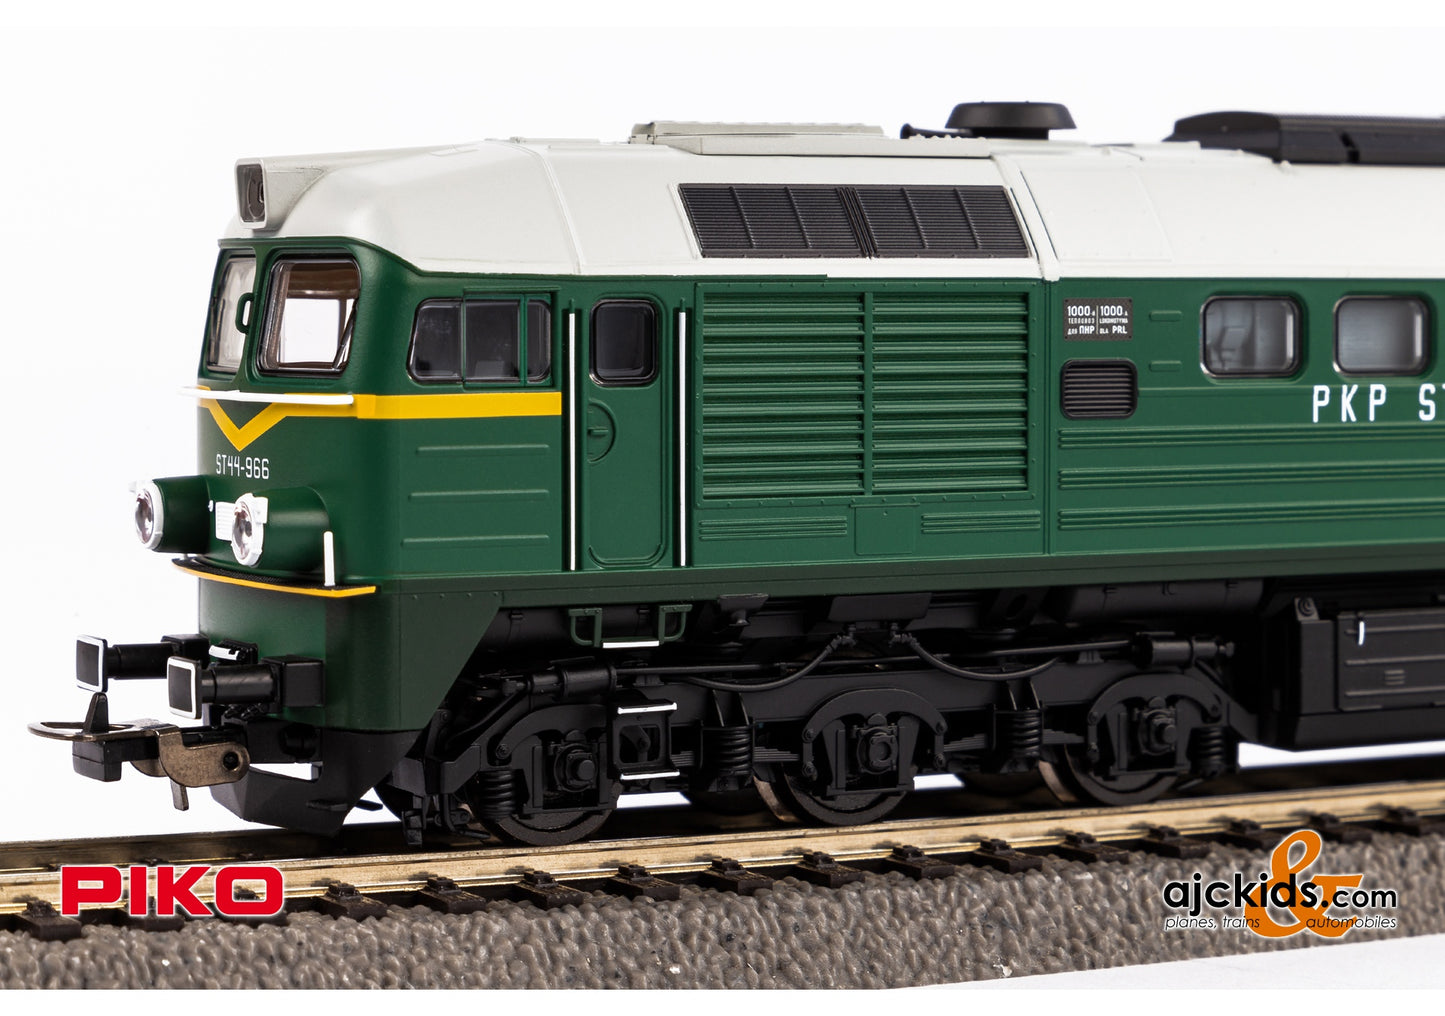 Piko 52909 - ST44 Diesel Locomotive PKP IV